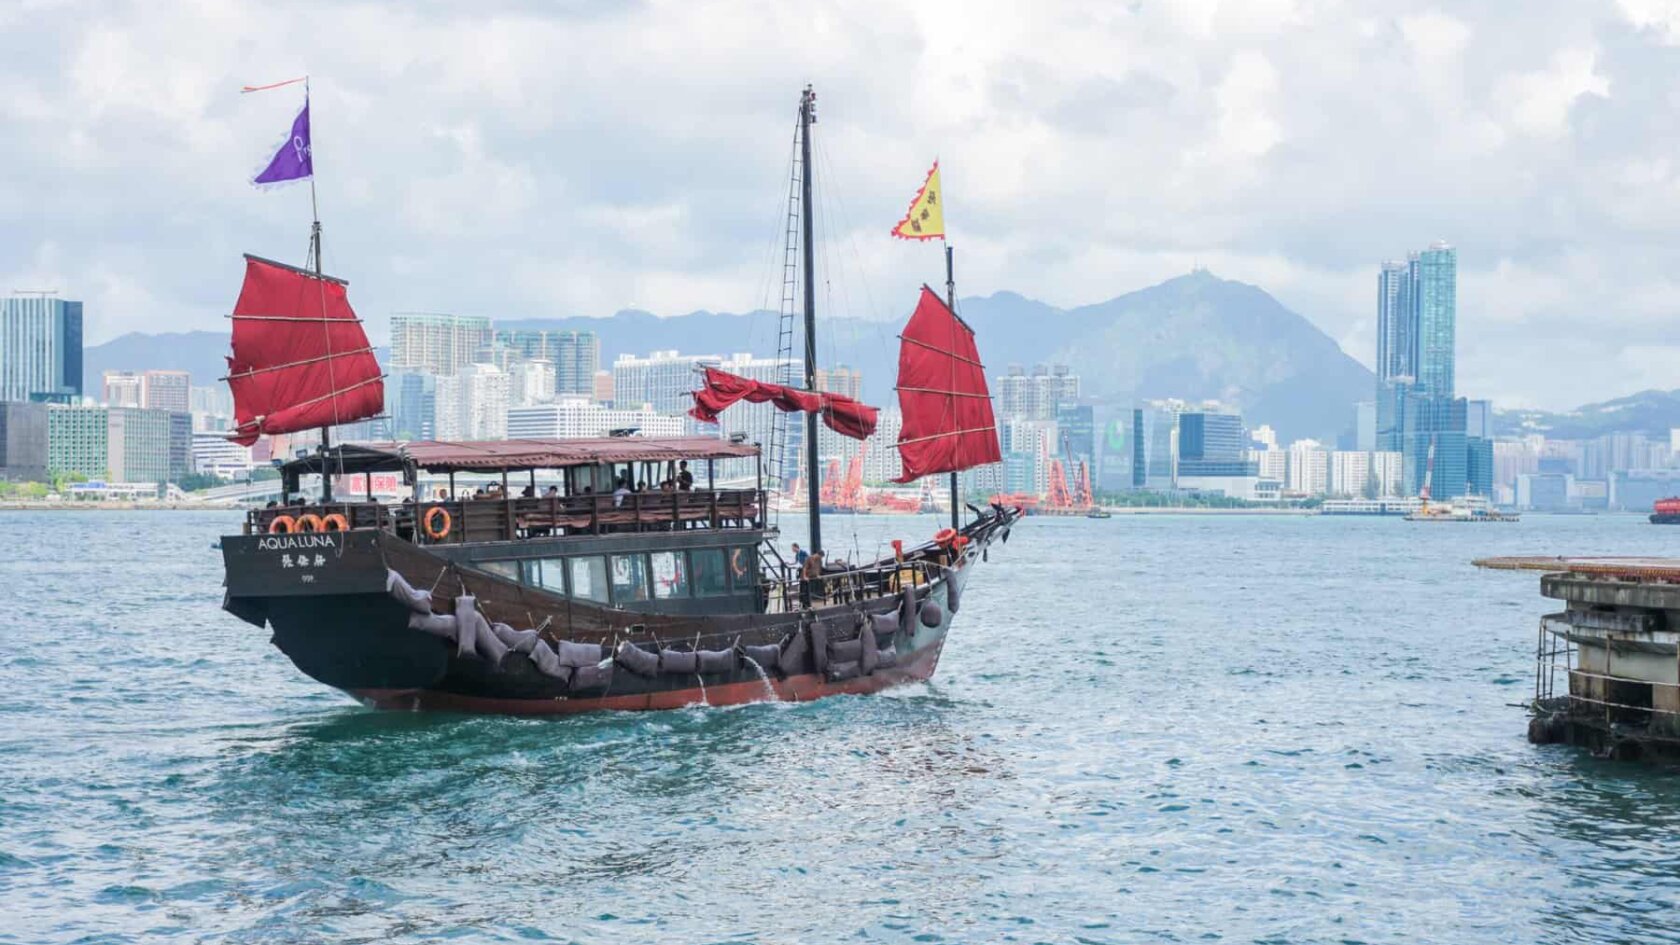 Hong Kong boat